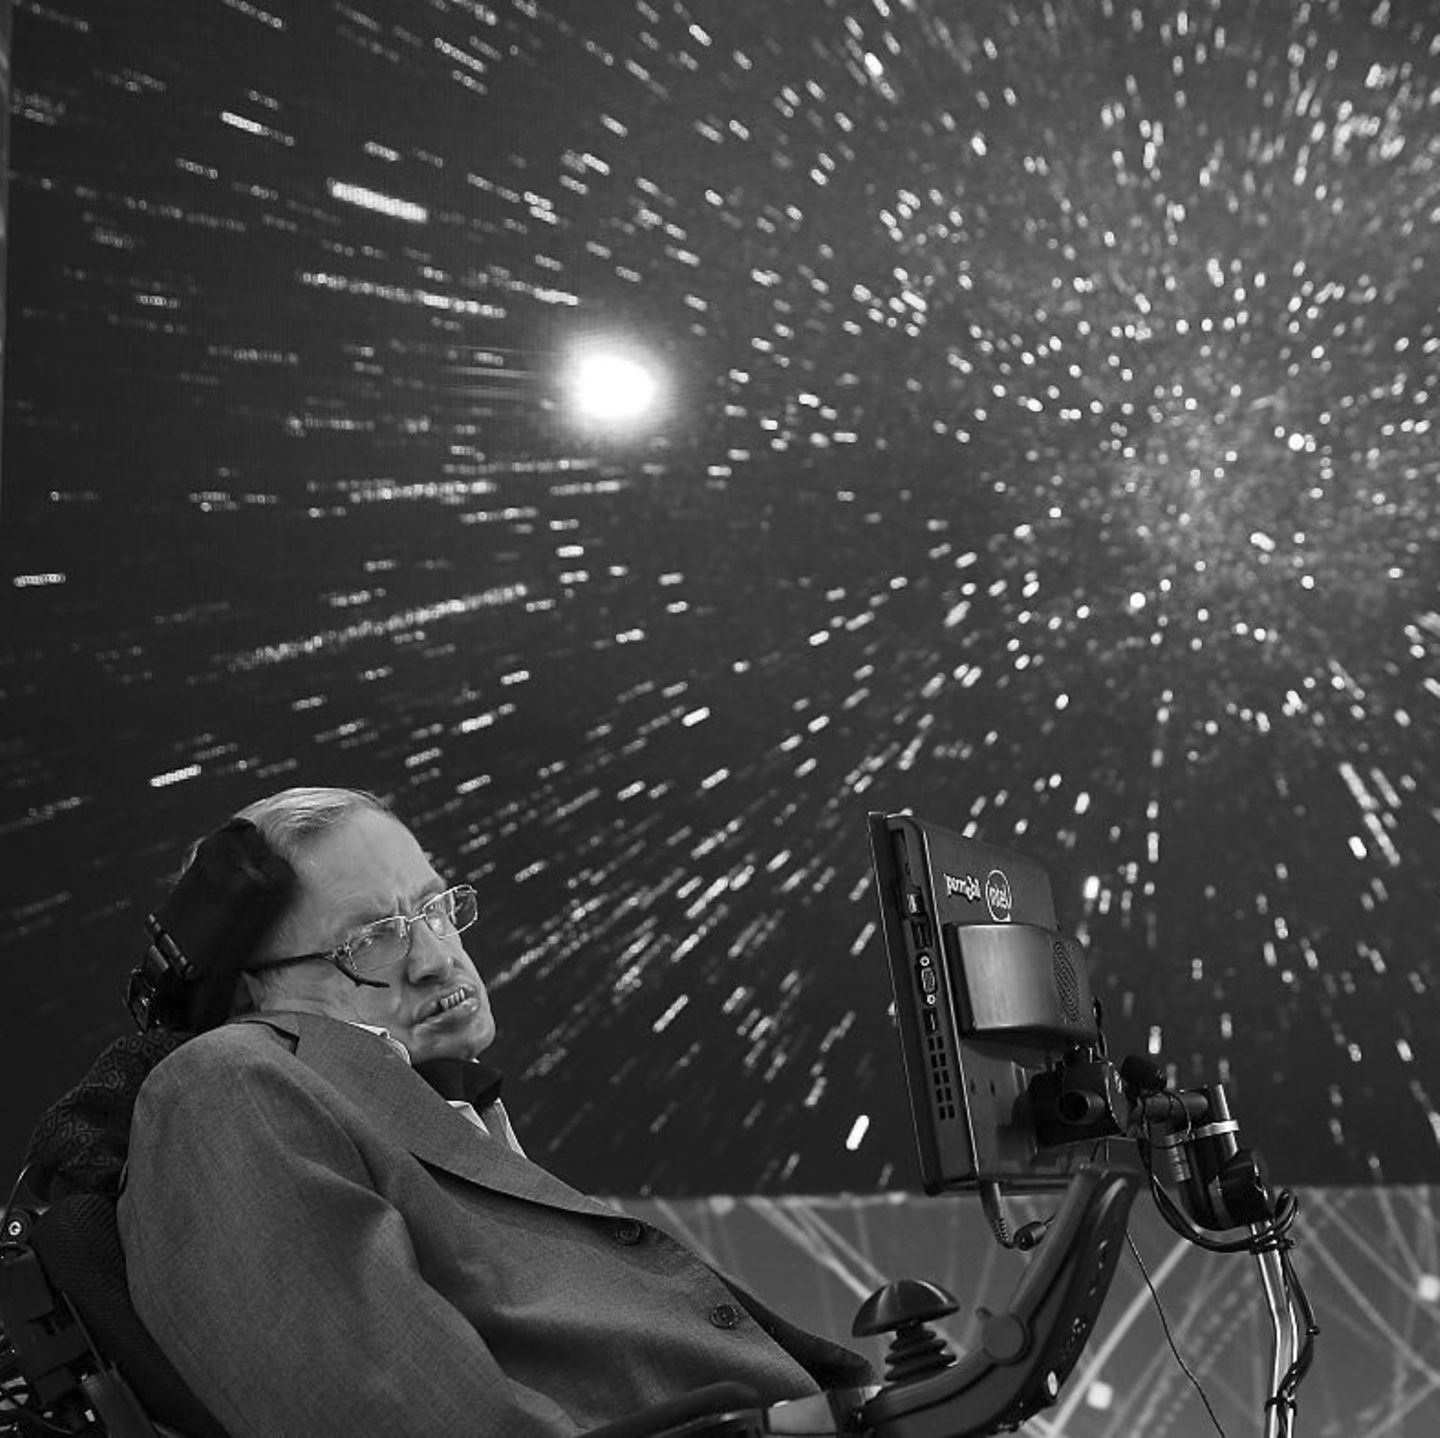 Er war eines der größten Genies unserer Zeit: Der britische Astrophysiker Stephen Hawking erforschte Zeit seines Lebens unser Universum und unseren Ursprung. Er galt als einer der klügsten Köpfe der Welt, sein Buch "Eine kurze Geschichte der Zeit" machte komplexe Zusammenhänge auch für Laien verständlich. Am 14. März 2018 ist er gestorben.  Stephen Hawking litt seit Jahrzehnten an der Nervenkrankheit ALS und war nahezu bewegungslos an einen Rollstuhl gefesselt. Verständigen konnte er sich nur noch durch einen Sprachcomputer - dennoch forschte Hawking bis zu Schluss und trat zuletzt vor allem als Mahner auf, der vor den Gefahren von Klimawandel und Künstlicher Intelligenz warnte.